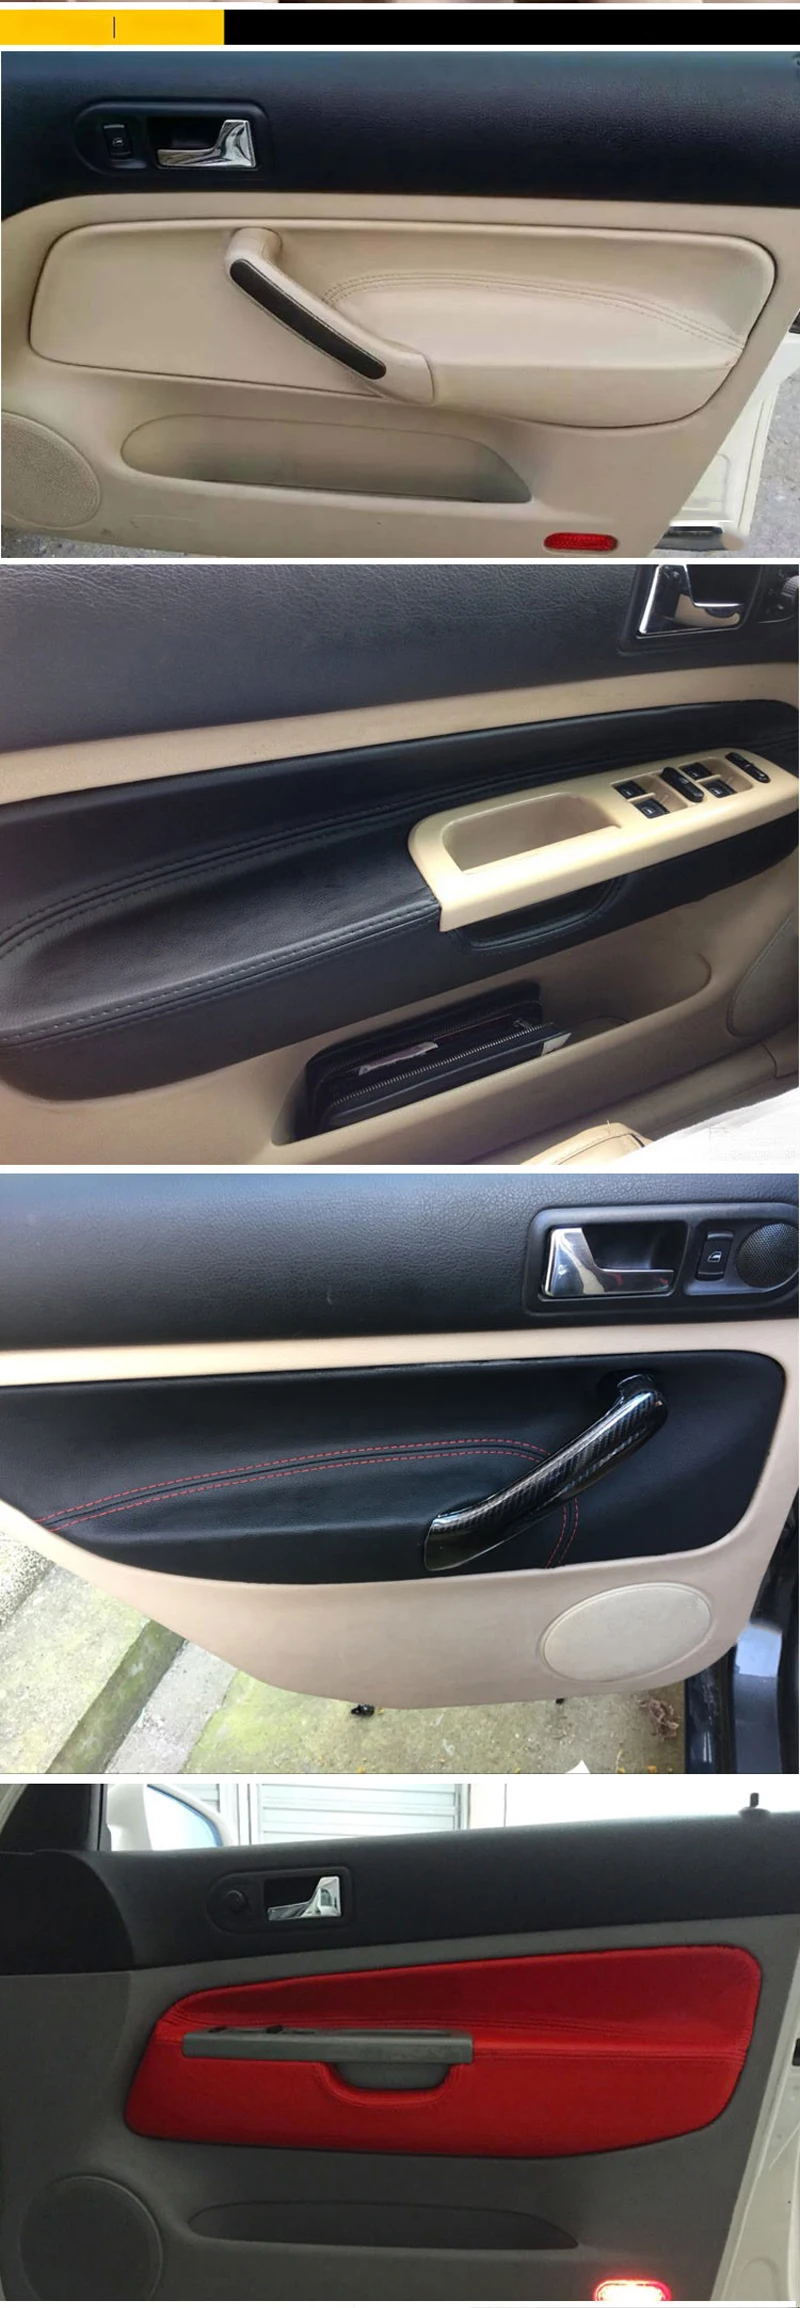 SRXTZM высокое качество автомобильный аксессуар защитная внутренняя дверная панель из микроволокна кожаный чехол для Volkswag Golf MK4 Bora 2002-2006